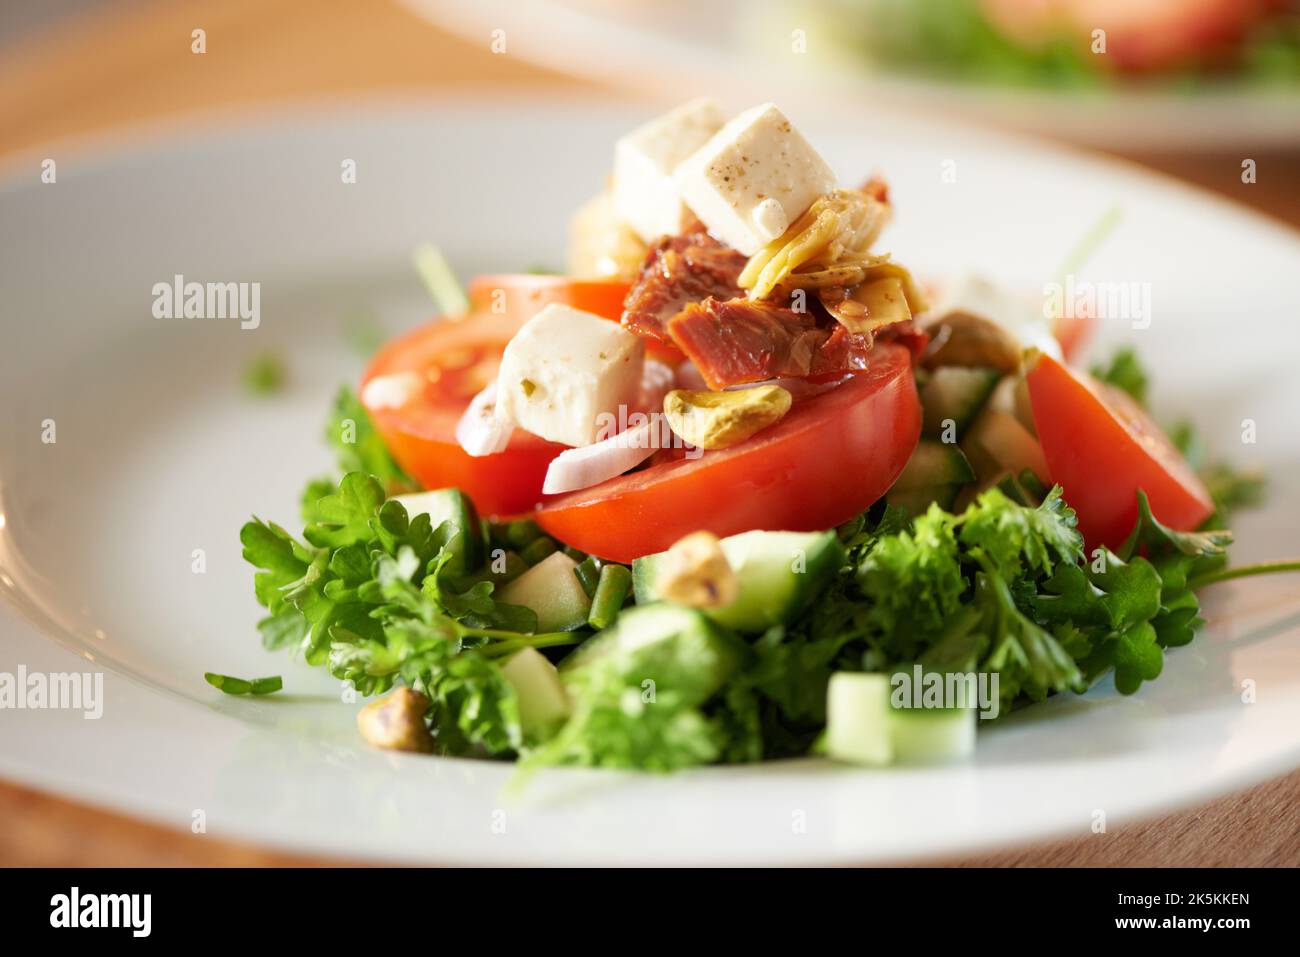 Une délicieuse salade. Gros plan de salade fraîchement hachée sur une assiette. Banque D'Images